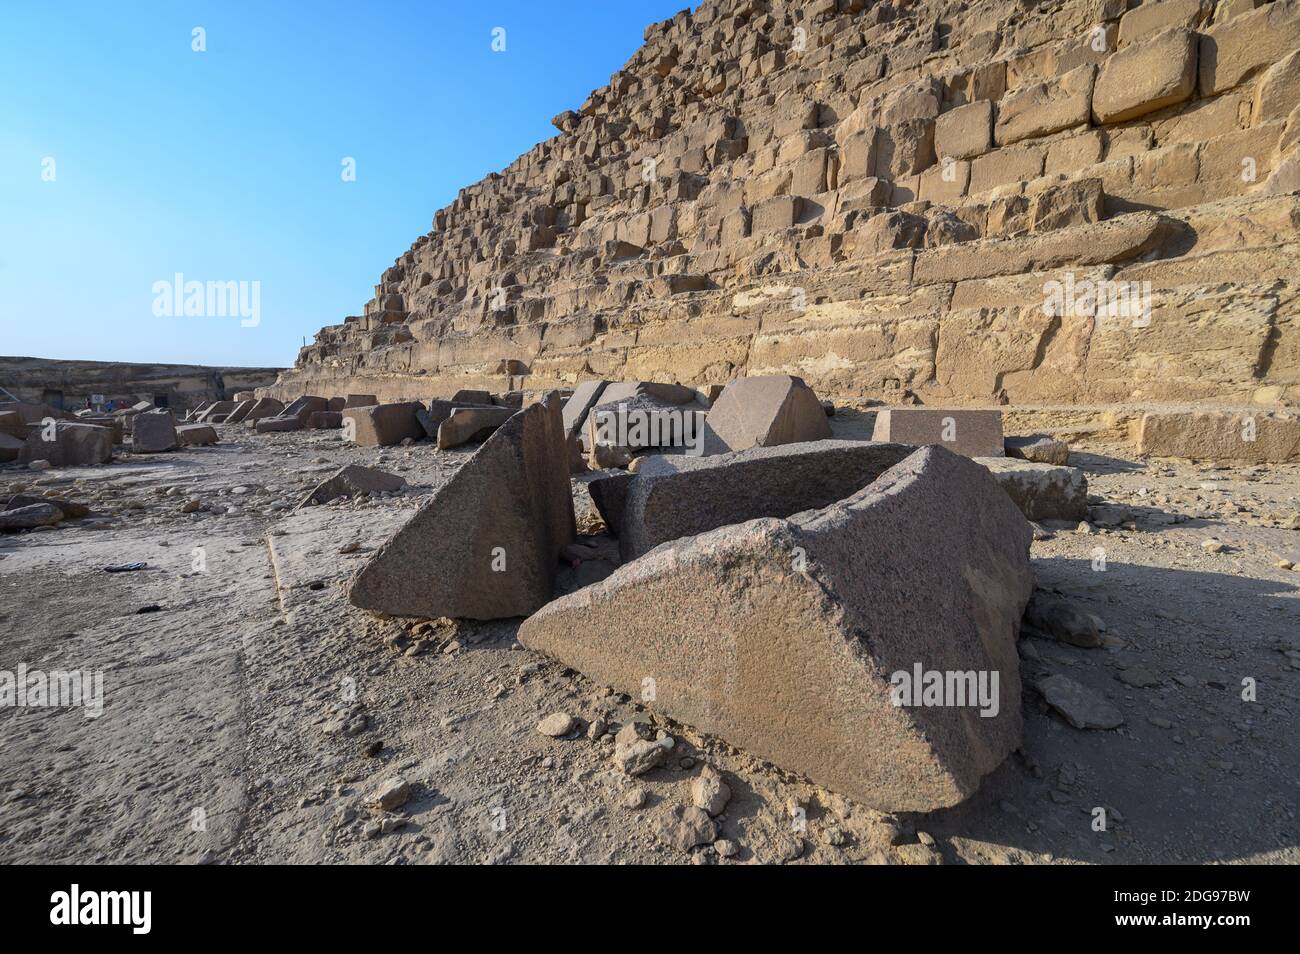 Bloques caídos en la base de la Pirámide de Khafre, complejo Pirámide de Giza, Giza, el Cairo, Egipto Foto de stock